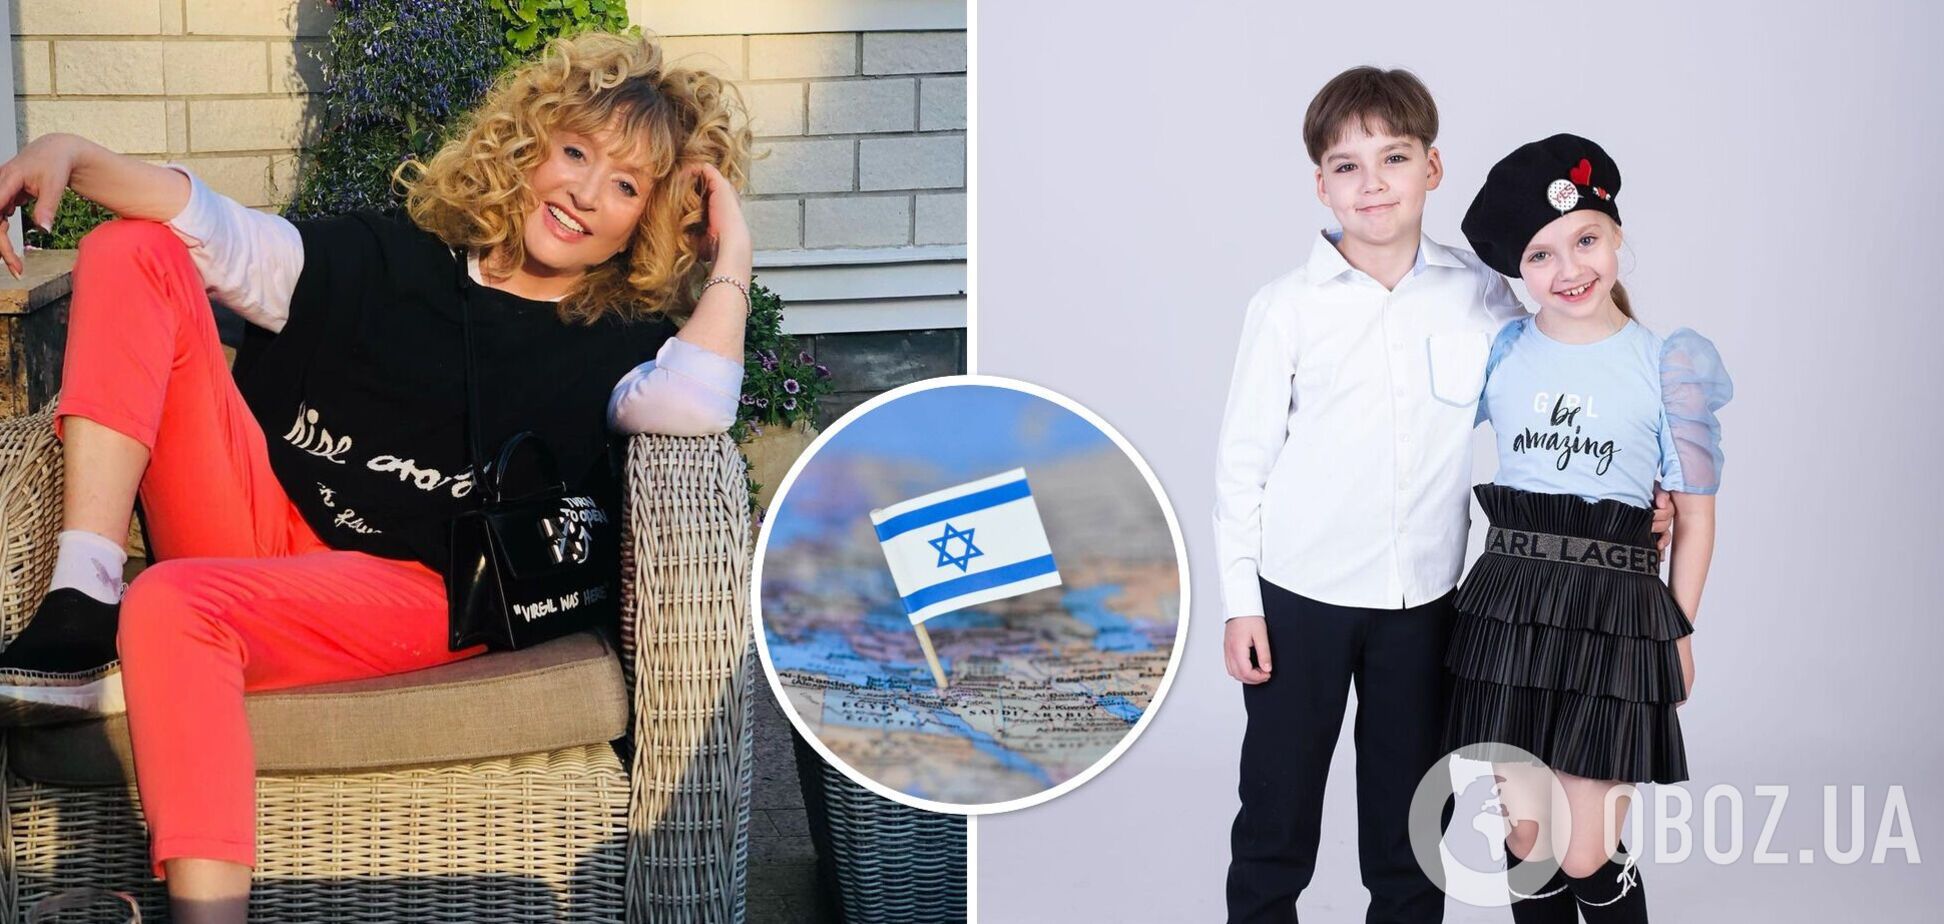 Алла Пугачева пошутила про эмиграцию своих детей в Израиль, чем спровоцировала истерику у россиян